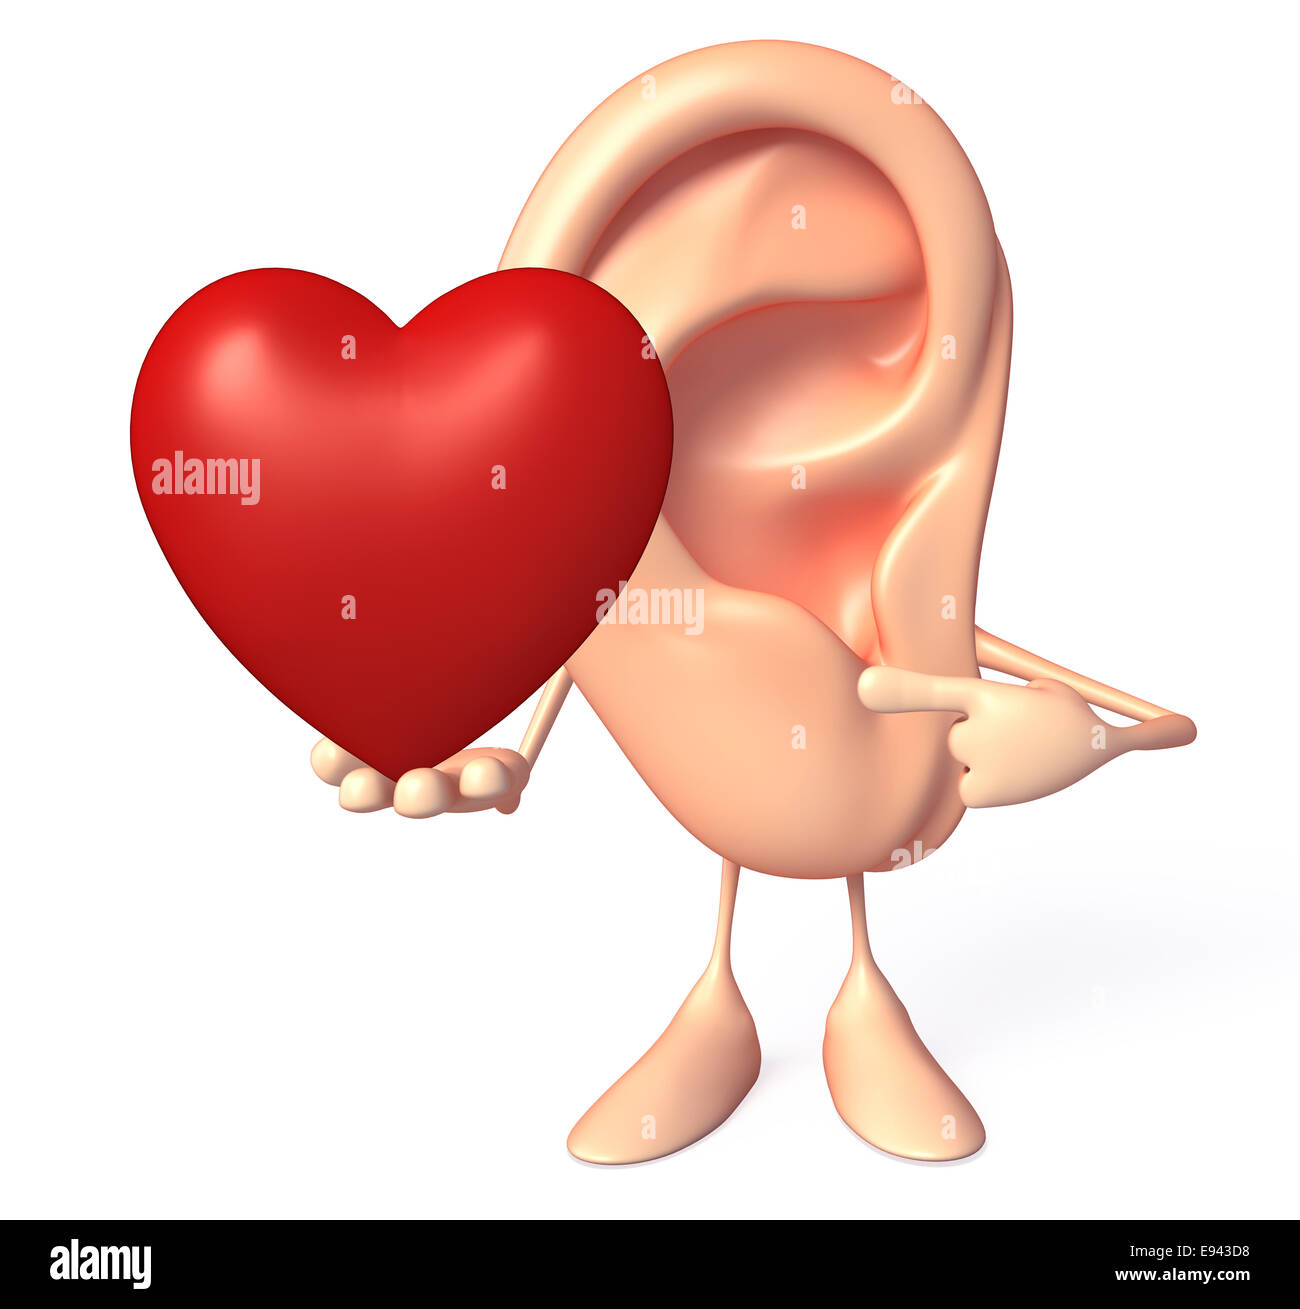 Personaggio dei fumetti di orecchio con cuore rosso Foto Stock